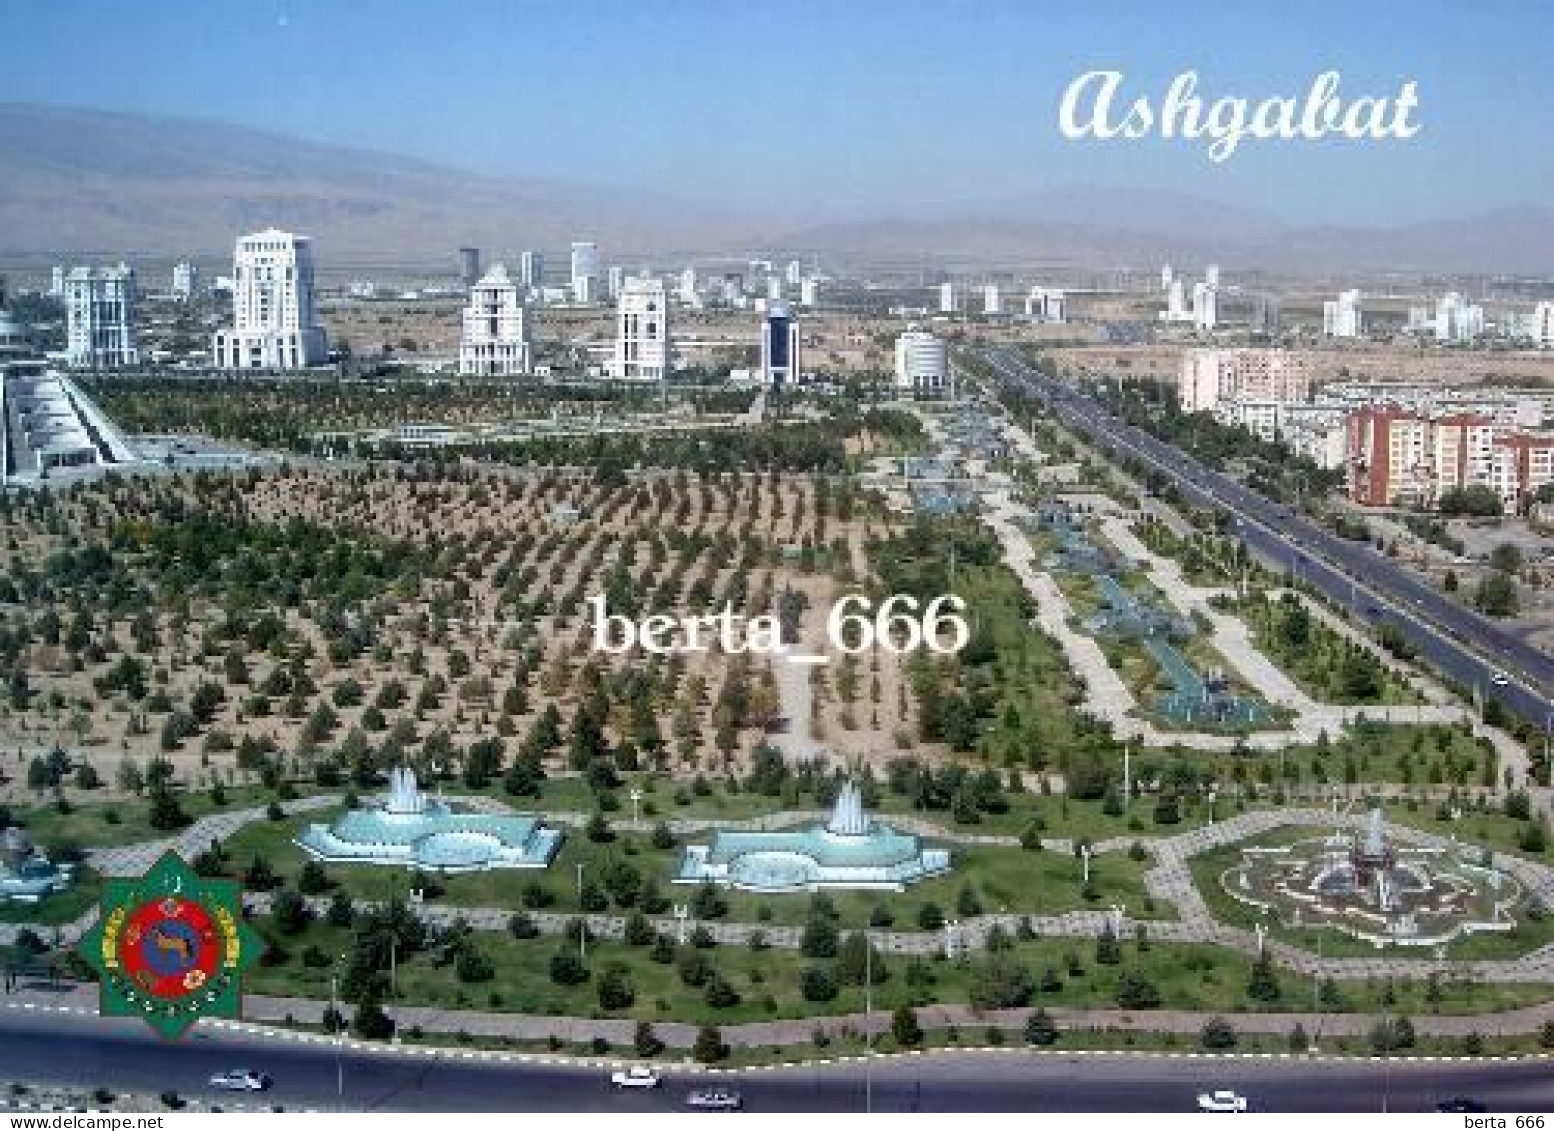 Turkmenistan Ashgabat Overview New Postcard - Turkmenistán